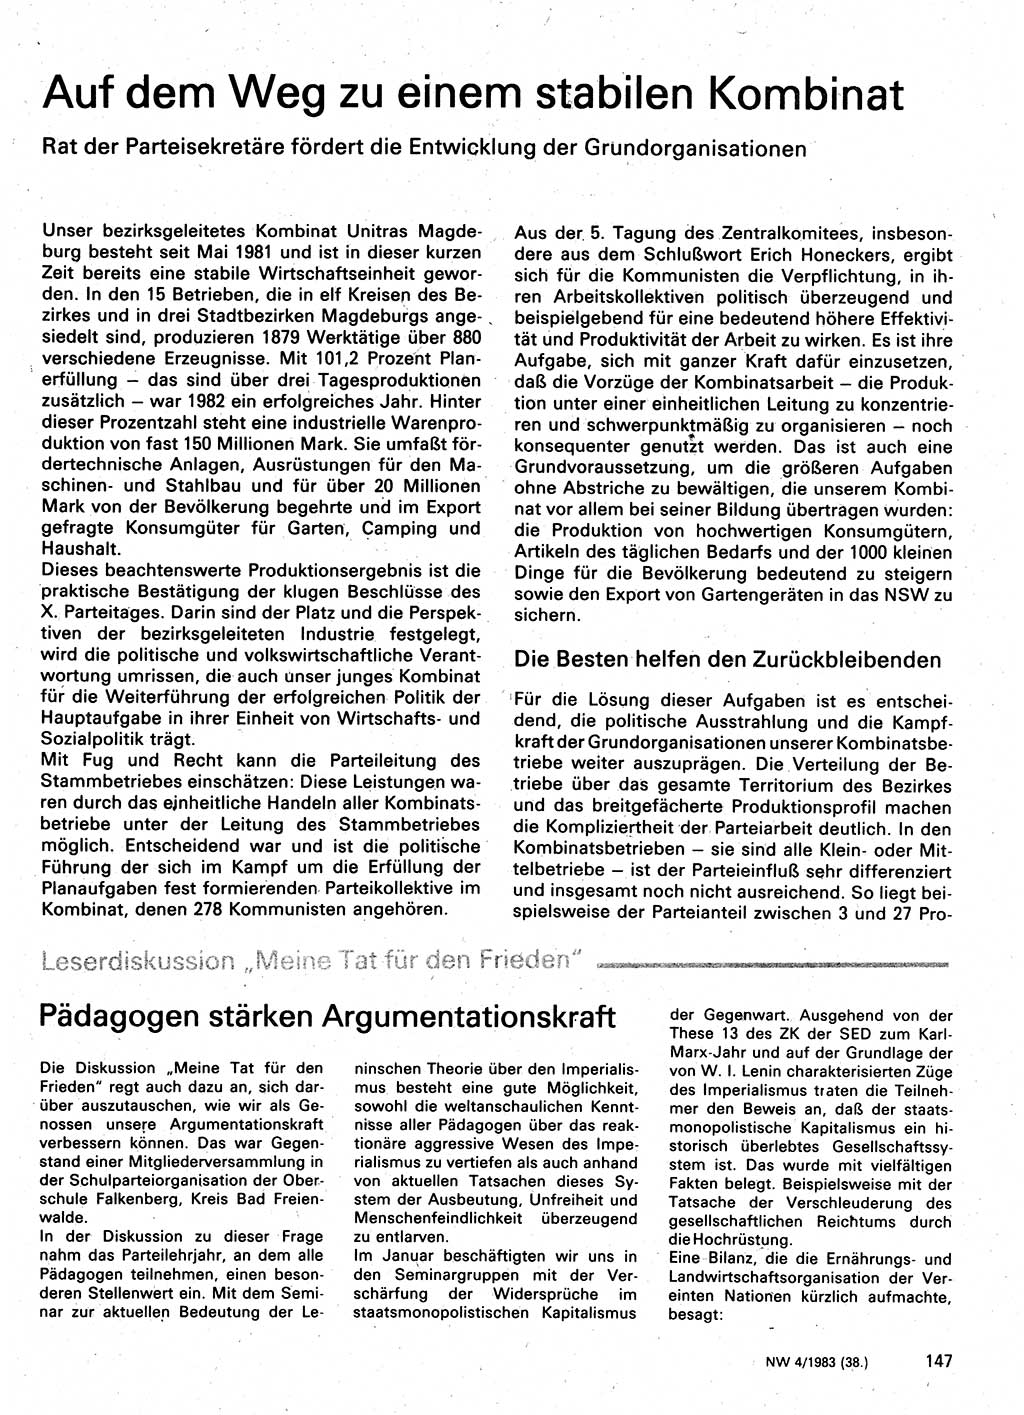 Neuer Weg (NW), Organ des Zentralkomitees (ZK) der SED (Sozialistische Einheitspartei Deutschlands) für Fragen des Parteilebens, 38. Jahrgang [Deutsche Demokratische Republik (DDR)] 1983, Seite 147 (NW ZK SED DDR 1983, S. 147)